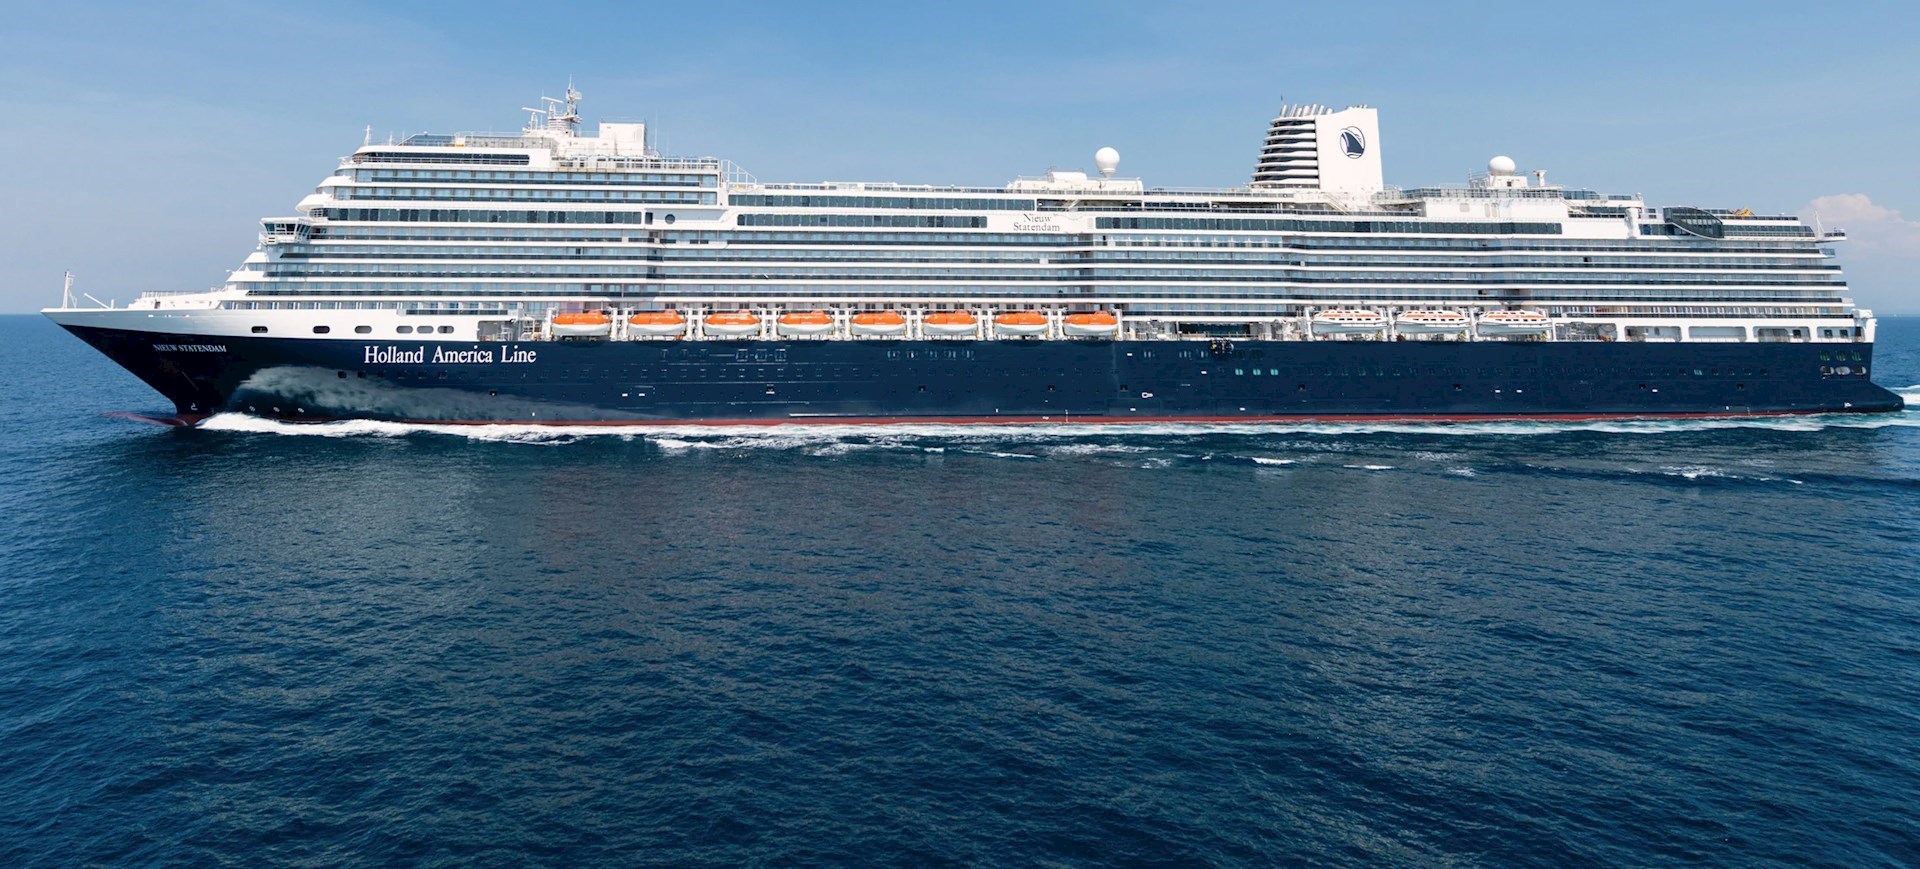 holland america cruise ship nieuw statendam